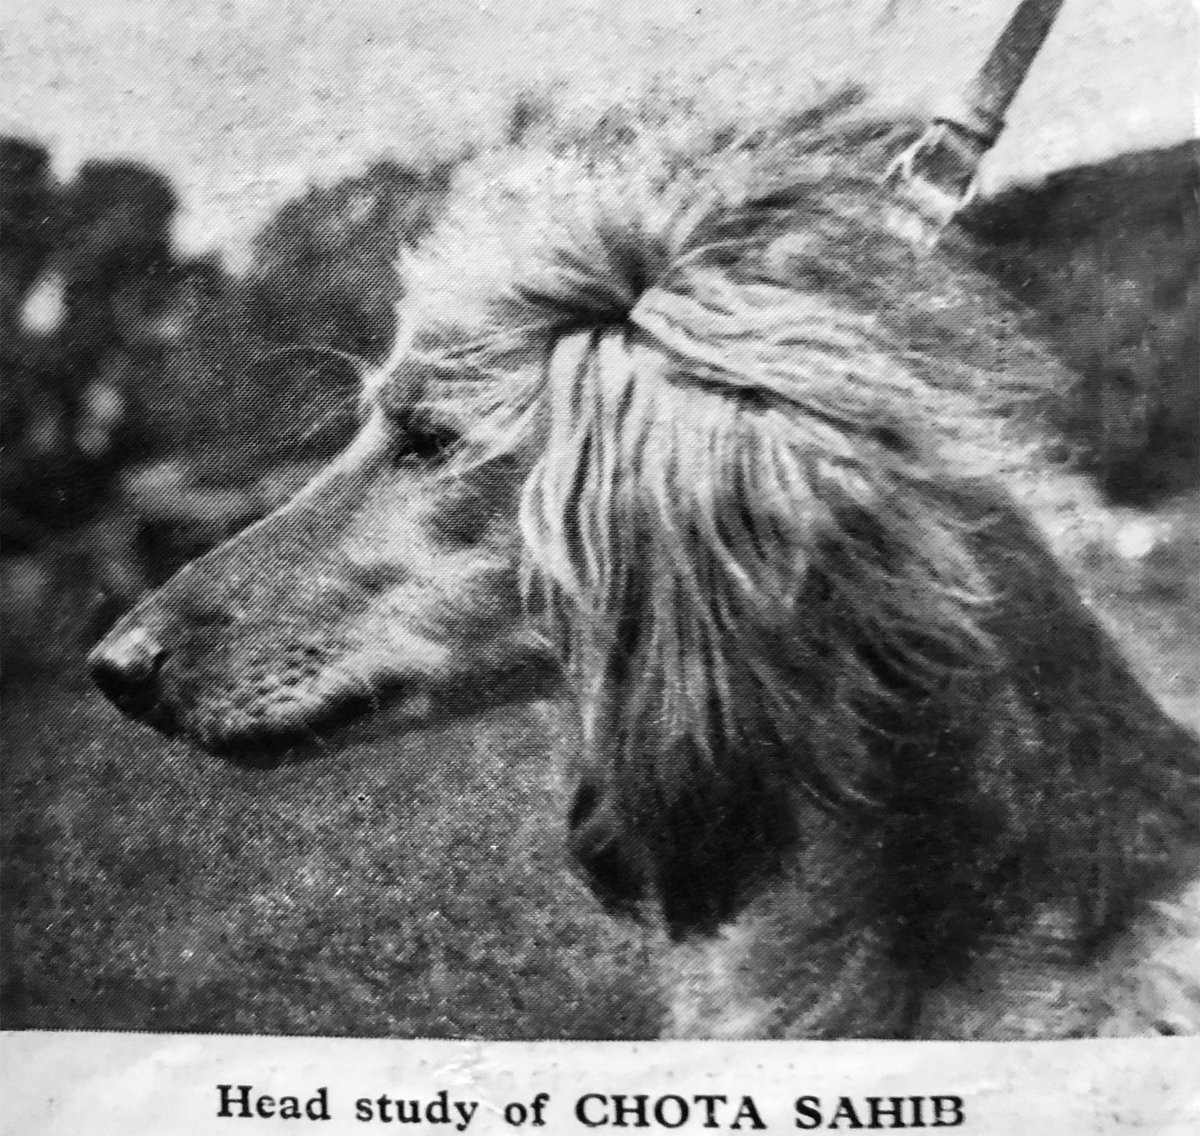 Image of Chota Sahib